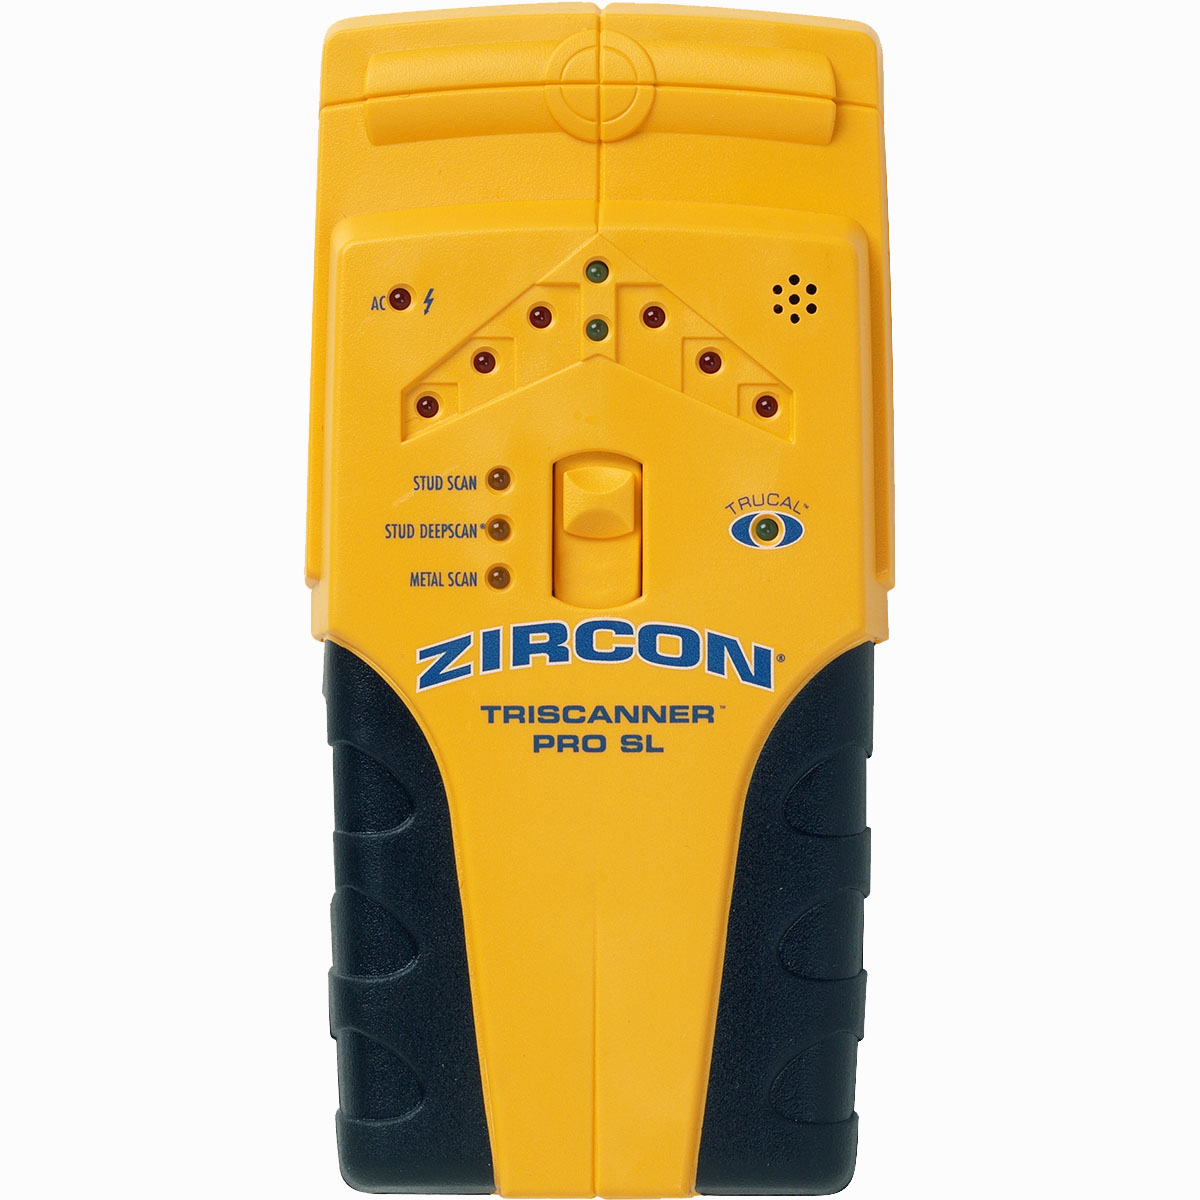 Zircon TriScanner Pro SL